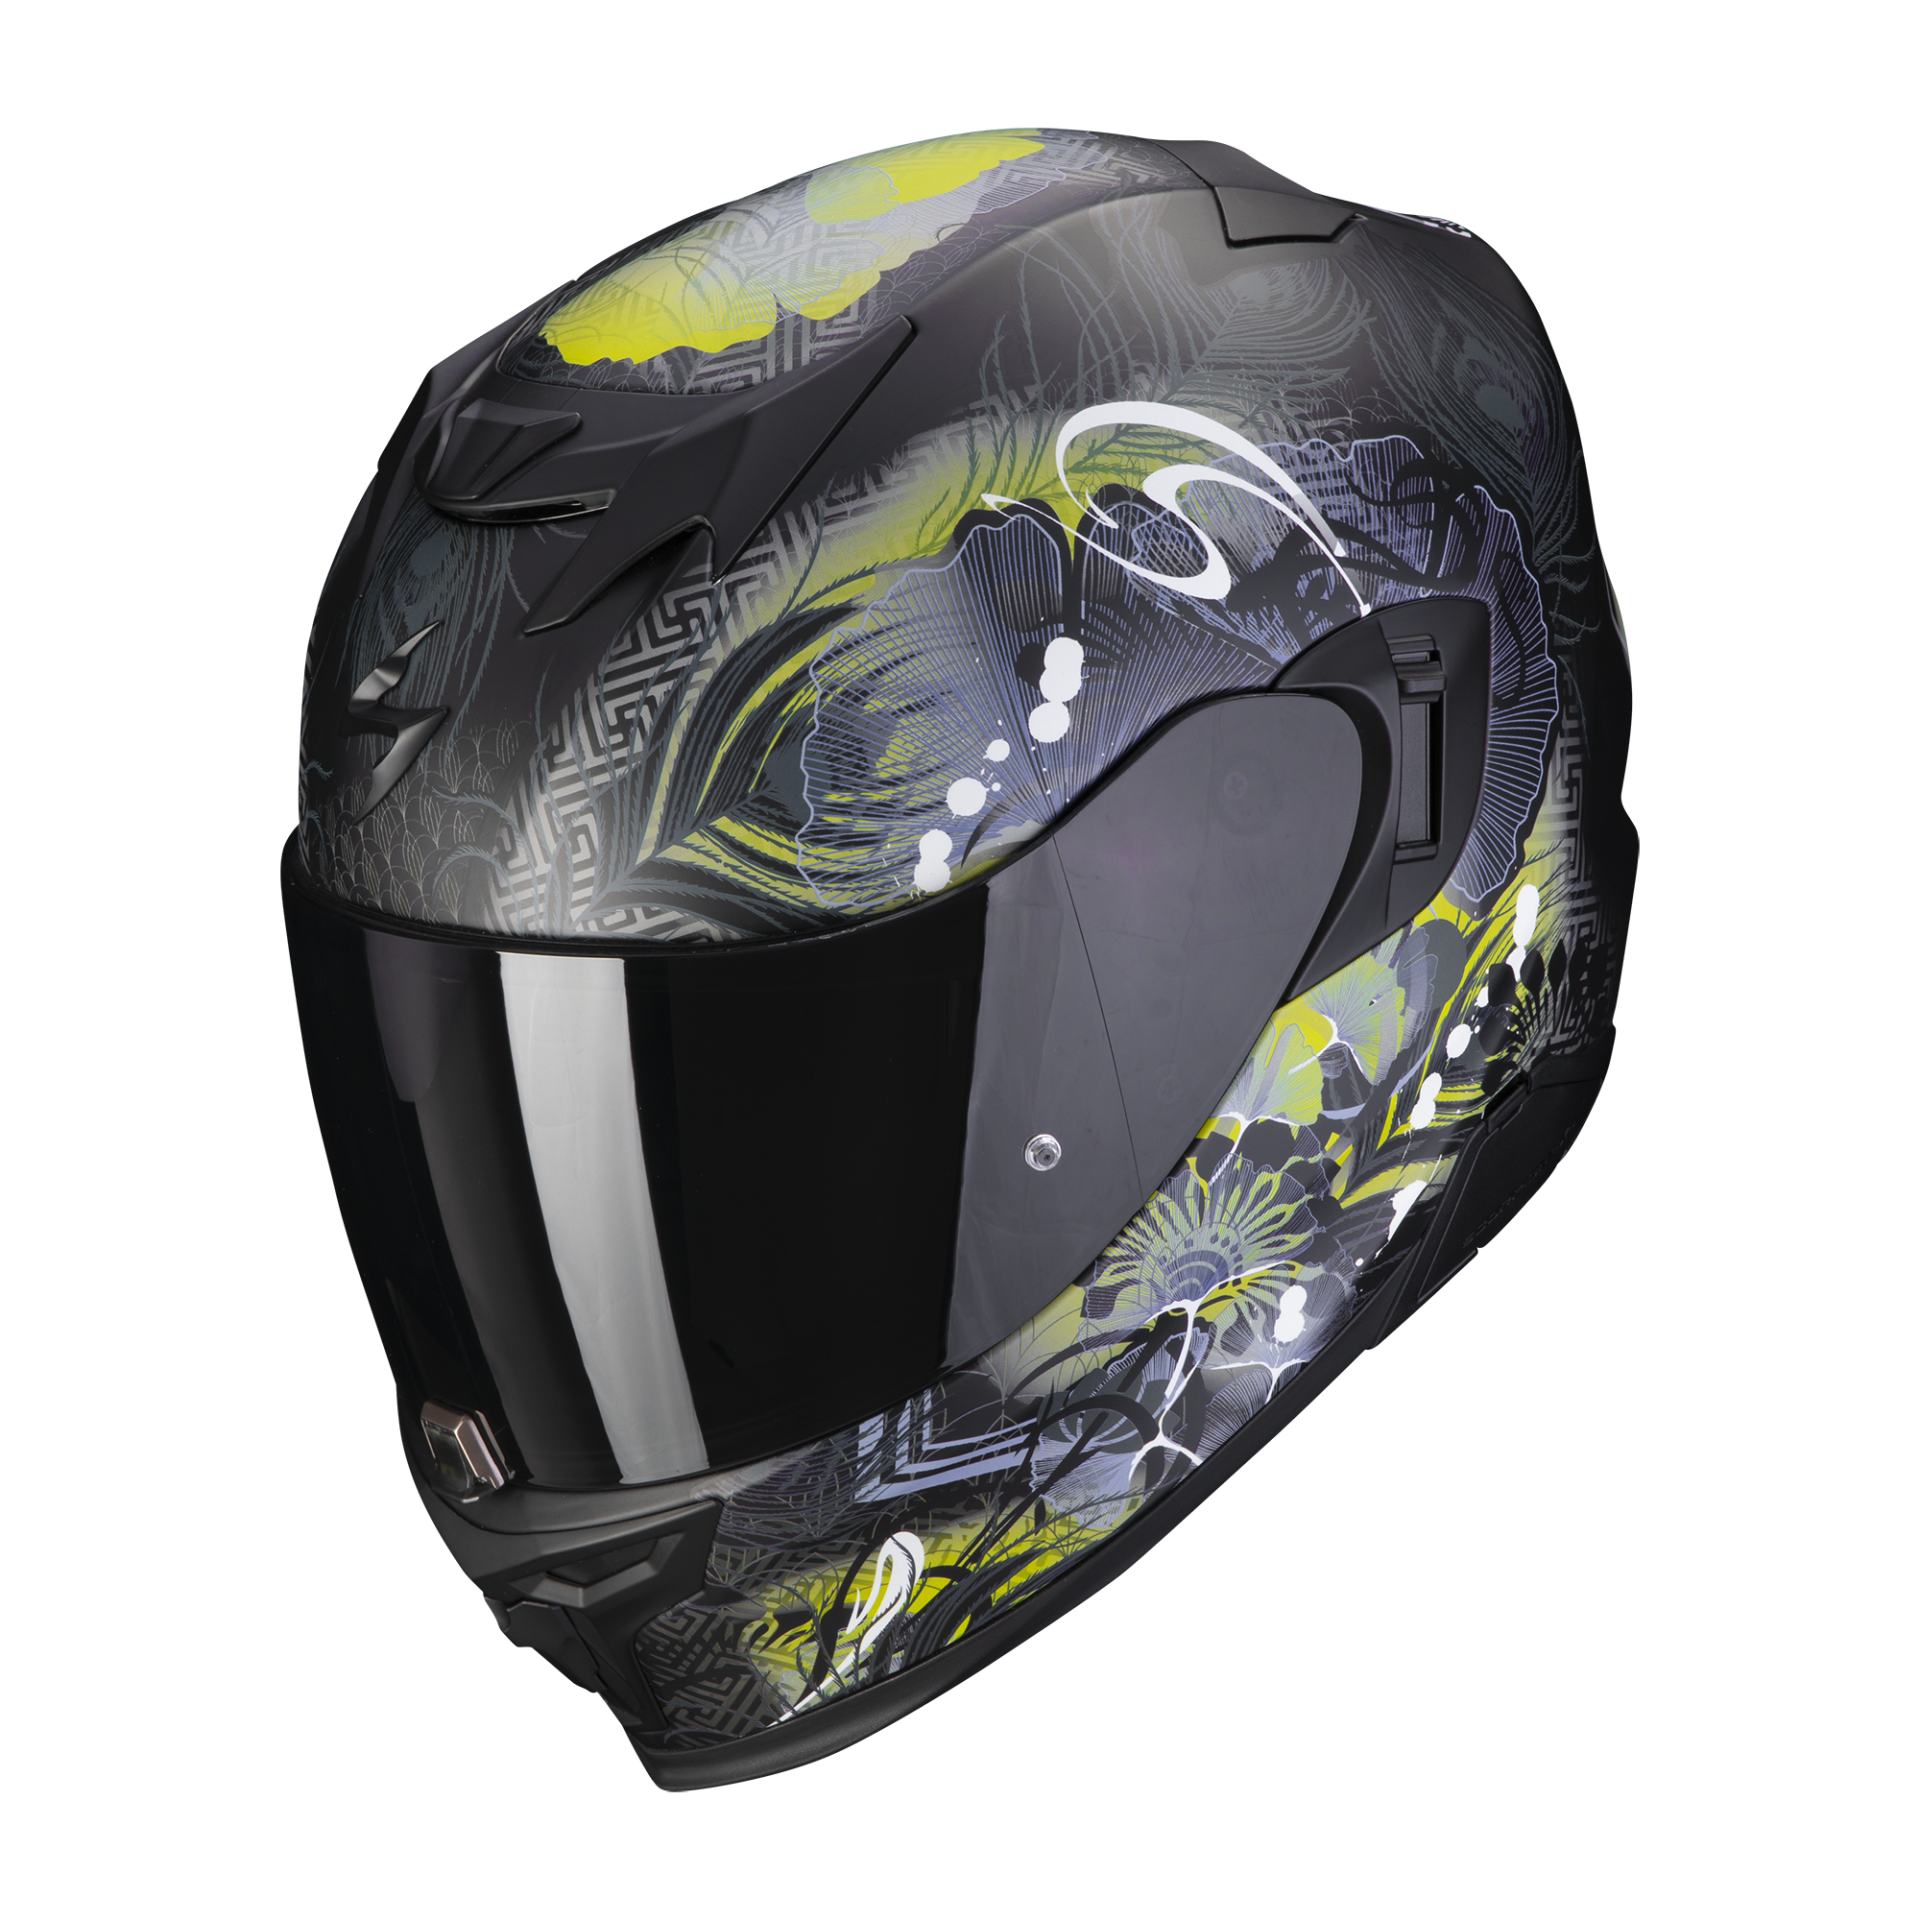 Image of Scorpion Exo-520 Evo Air Melrose Matt Black-Yellow Full Face Helmet Size XXS EN